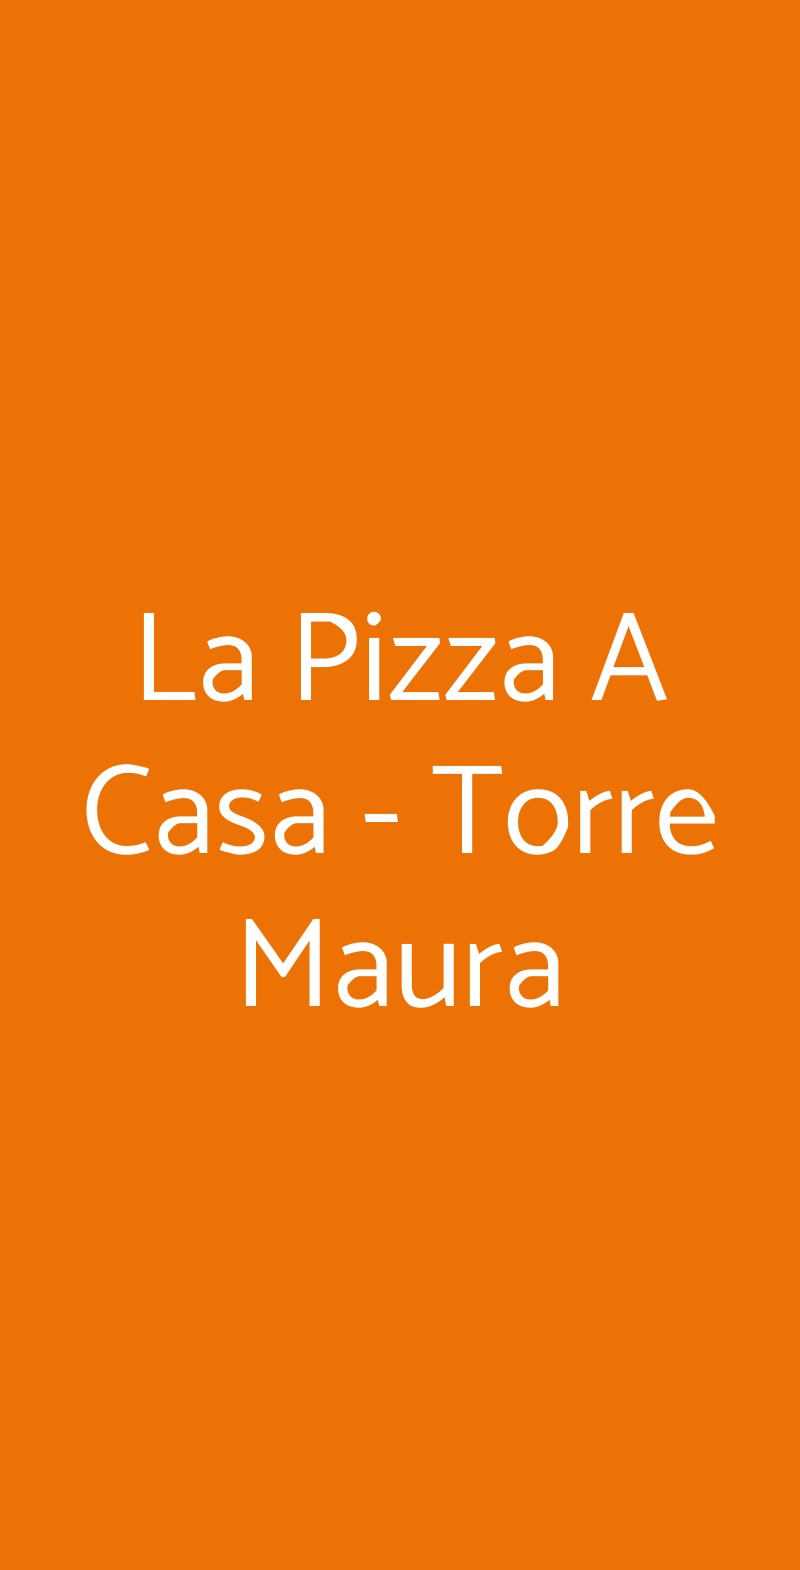 La Pizza A Casa - Torre Maura Roma menù 1 pagina